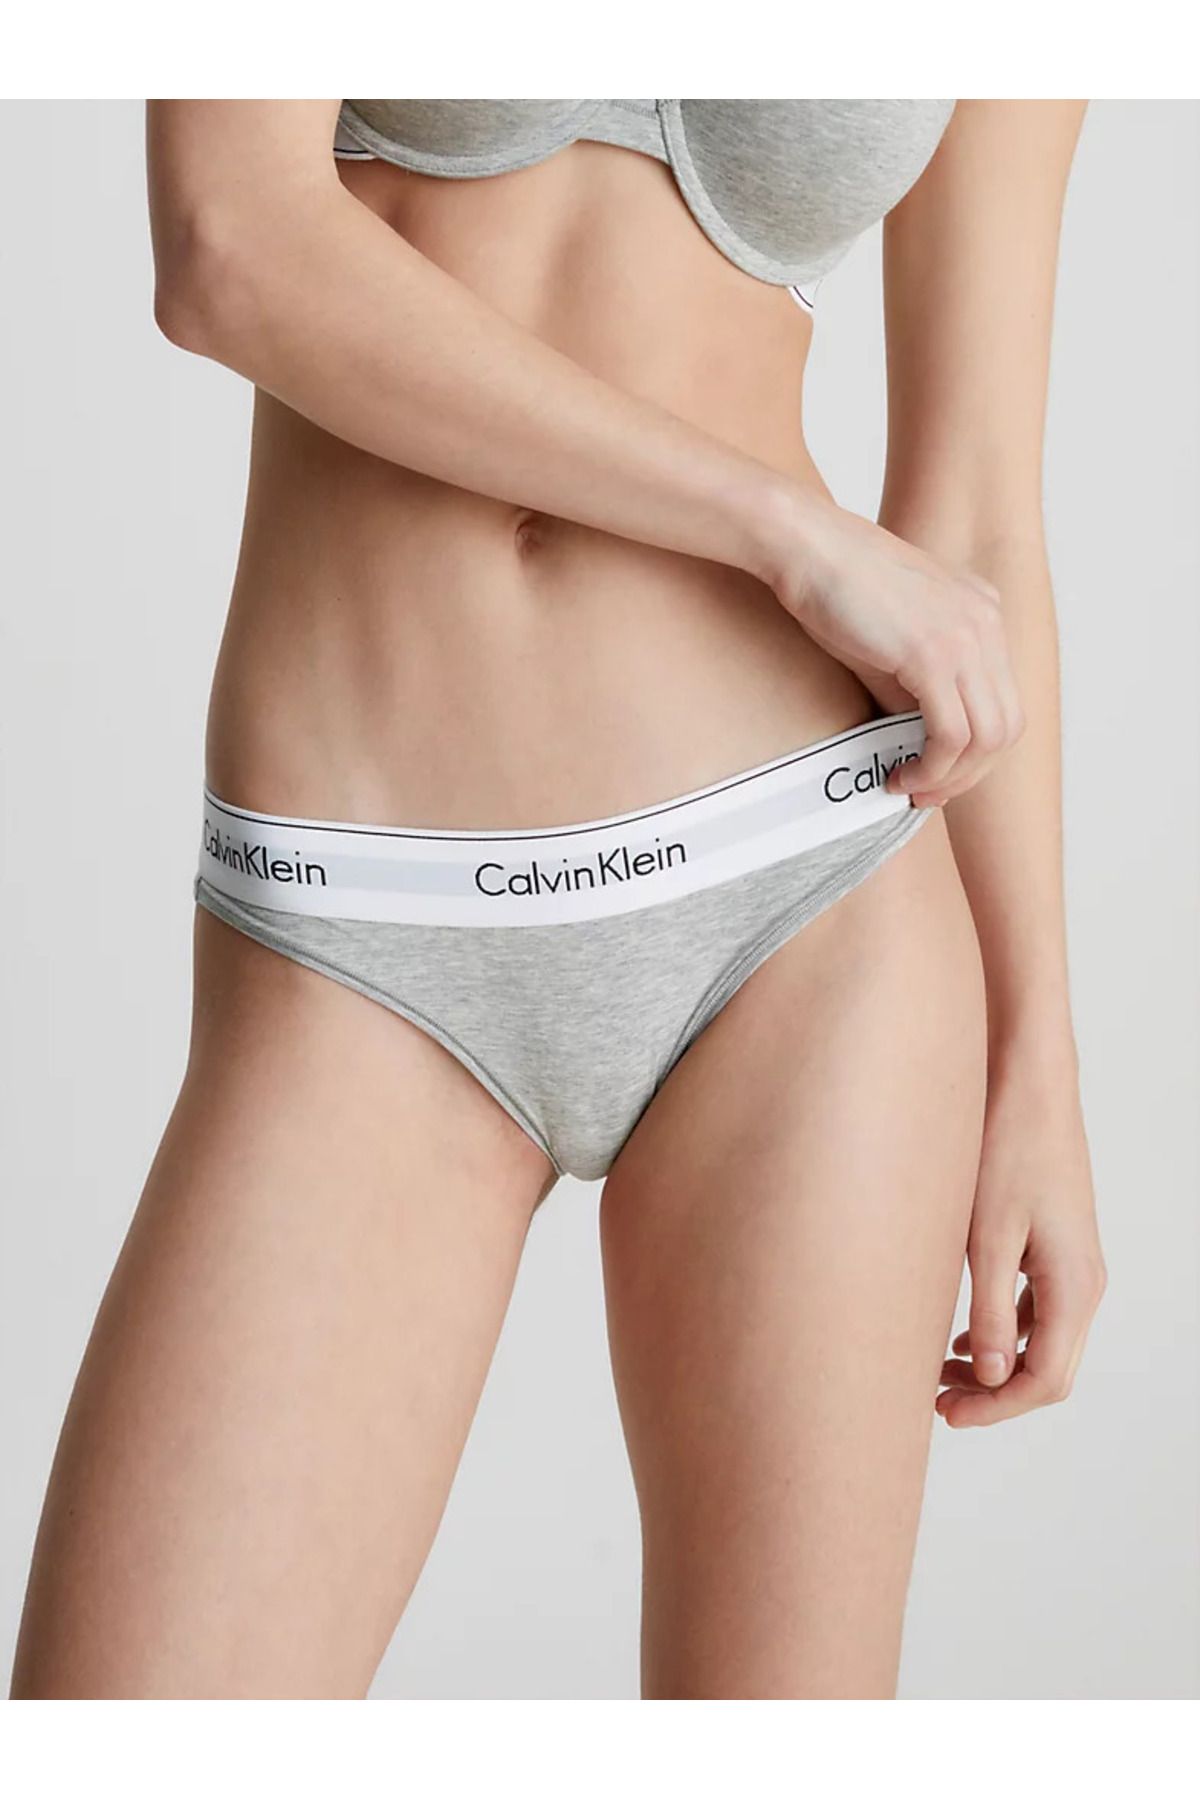 Calvin Klein Kadın Marka Logolu Orta Yüksek Belli Nefes Alabilir Rahat Kumaşlı Gündelik Kullanıma Uygun Gri Külot